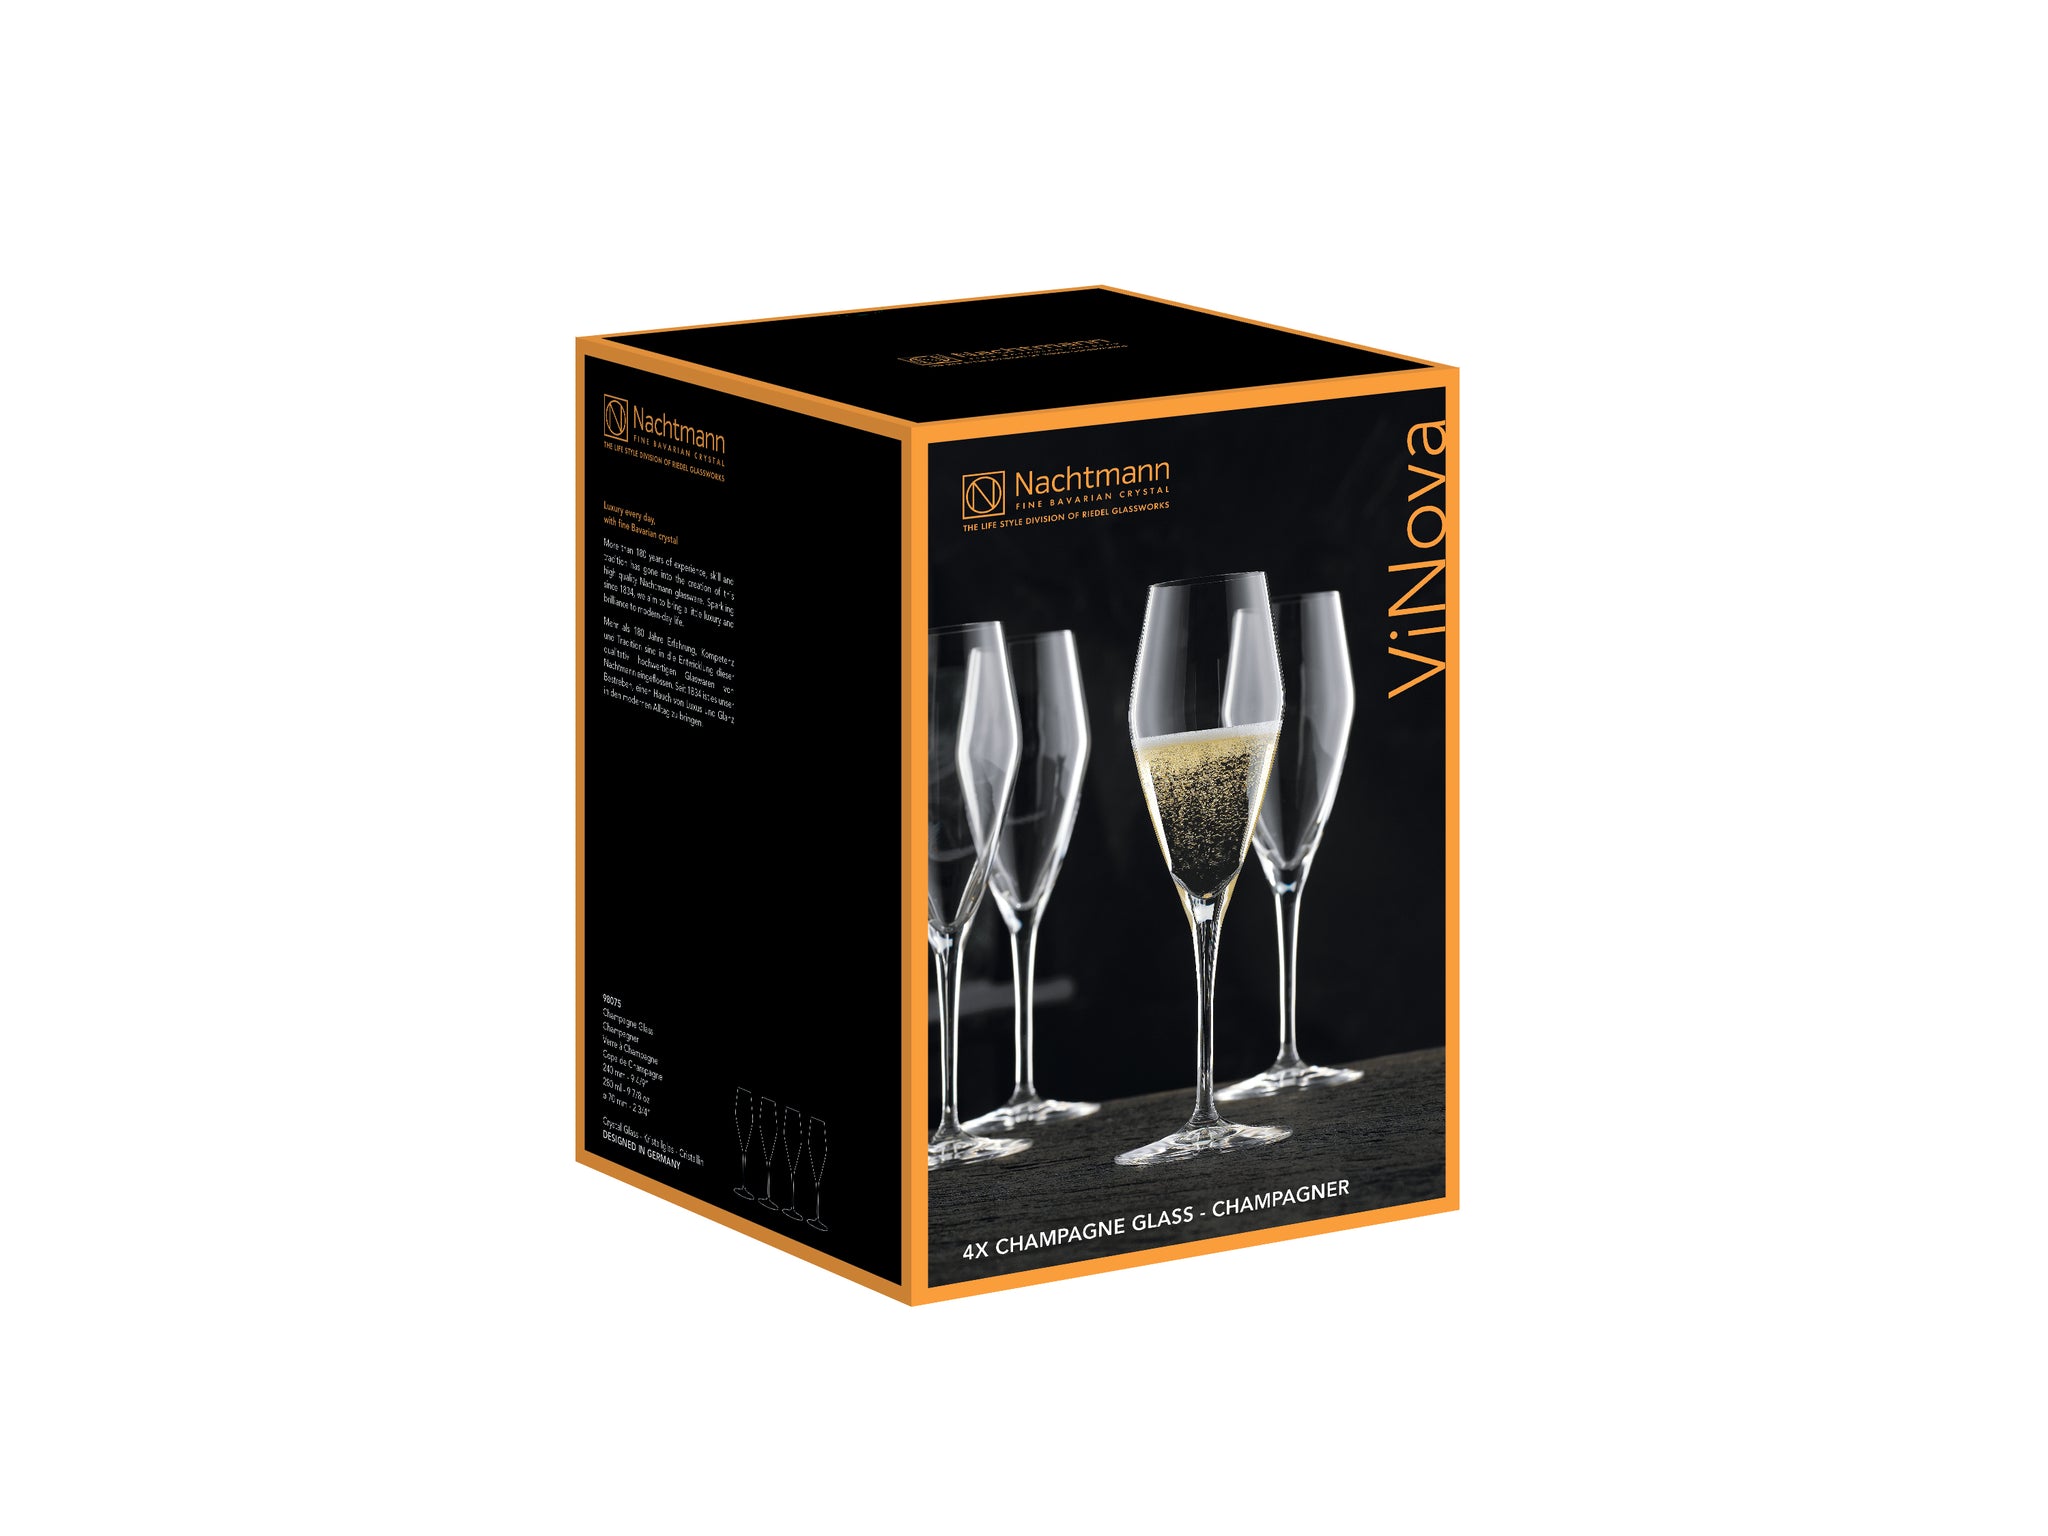 Nachtmann ViNova Champagne Crystal glasses, set of 4